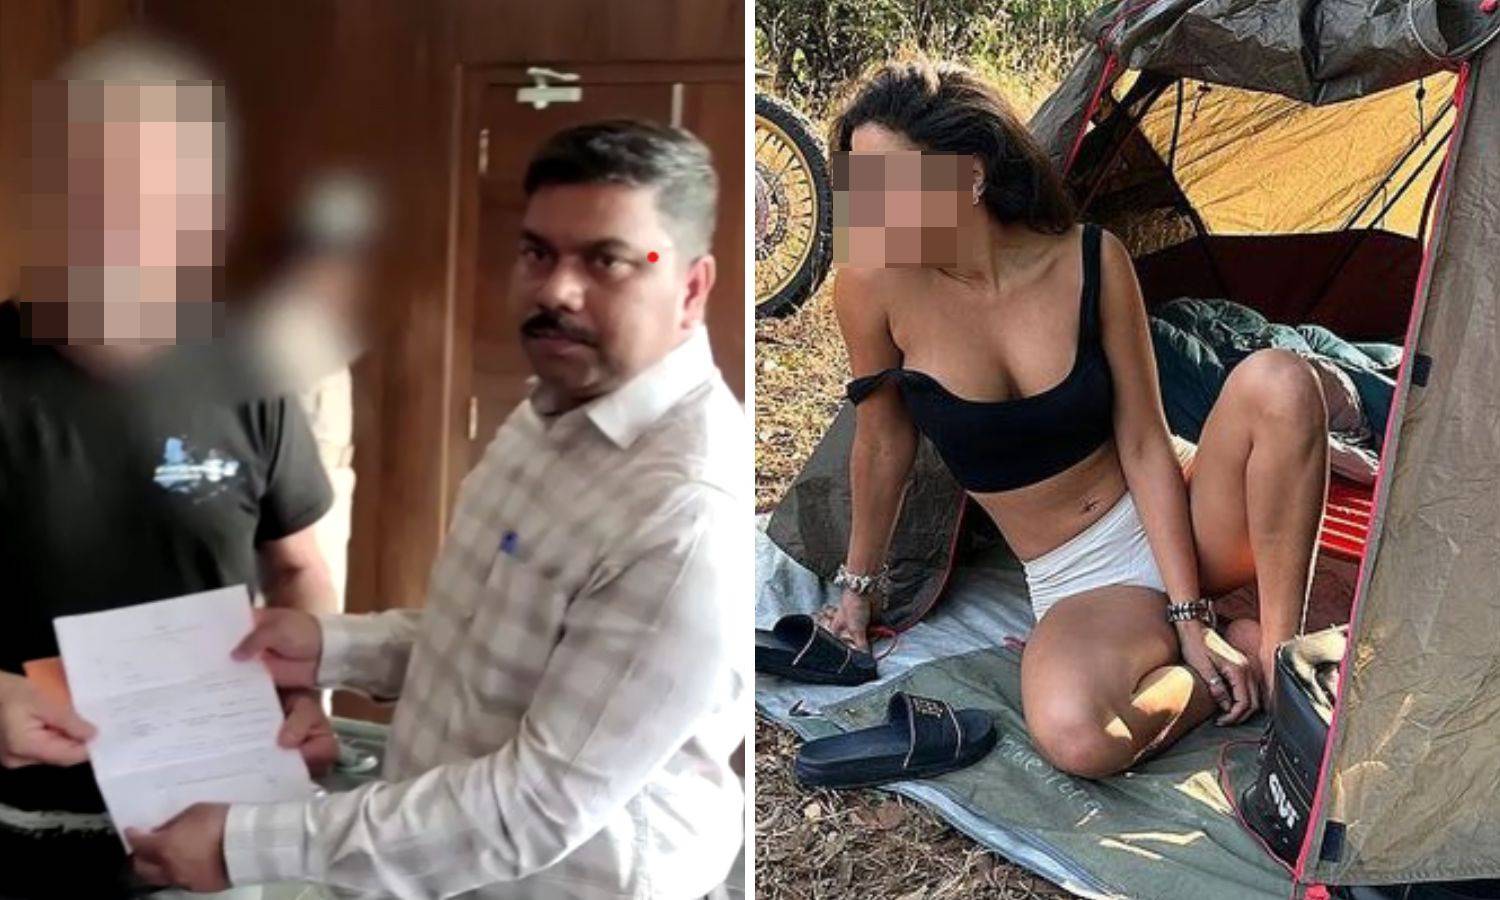 Trojica silovatelja iz Indije pred sudom, žrtva ispričala detalje: 'Dva sata su se iživljavali...'